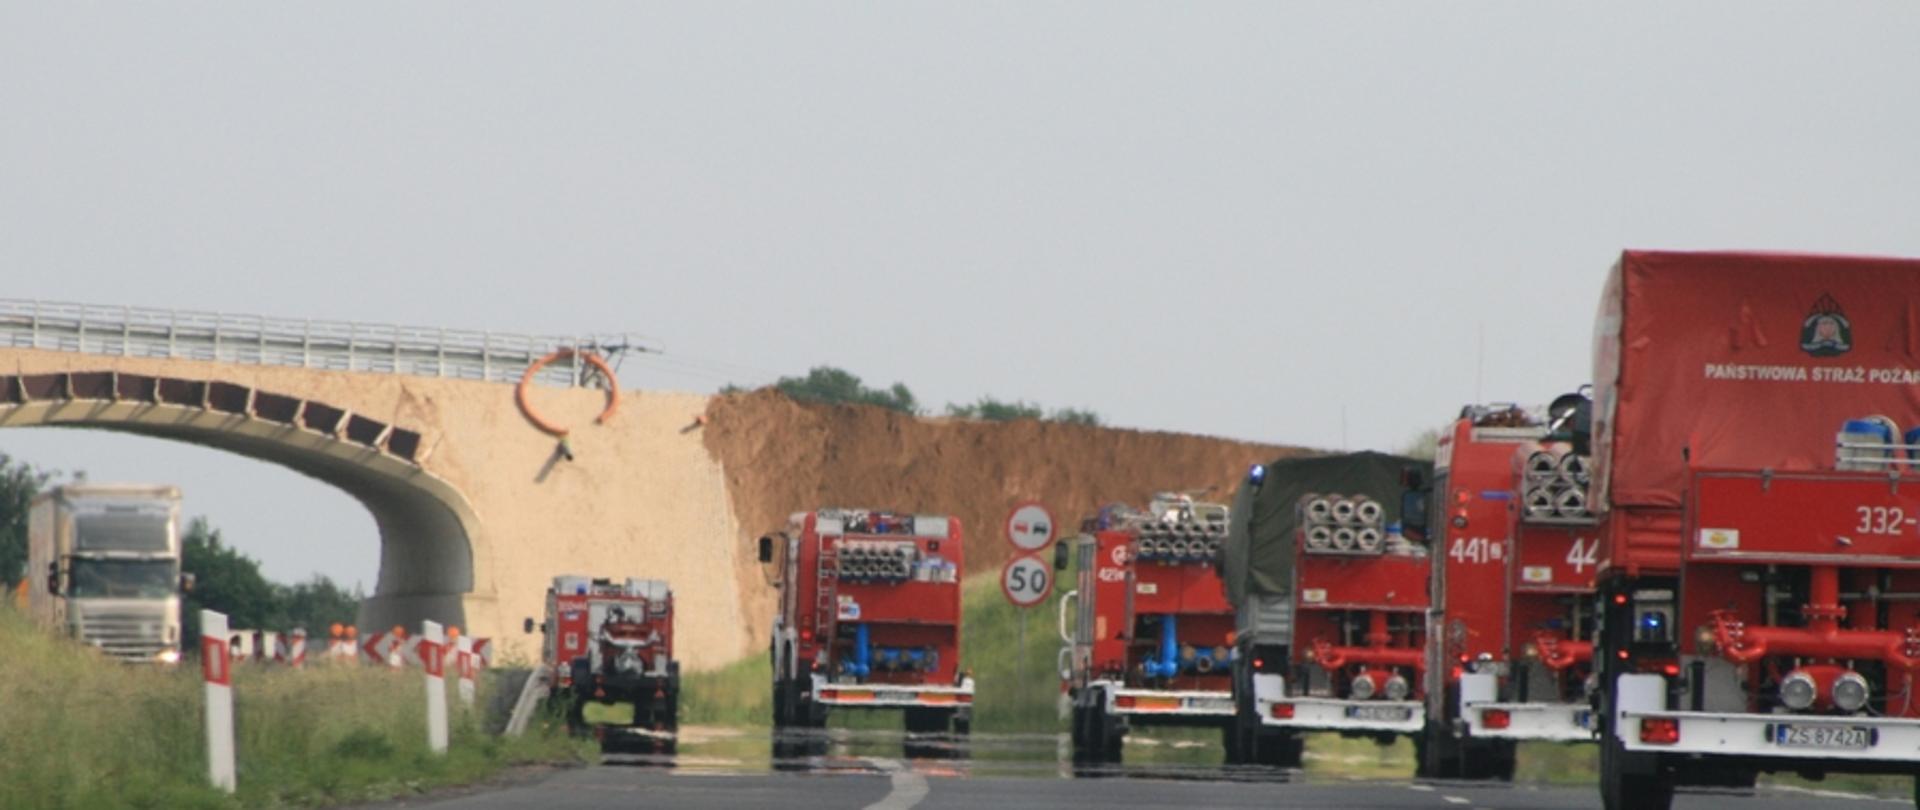 Zdjęcie przedstawia kolumnę samochodów pożarniczych